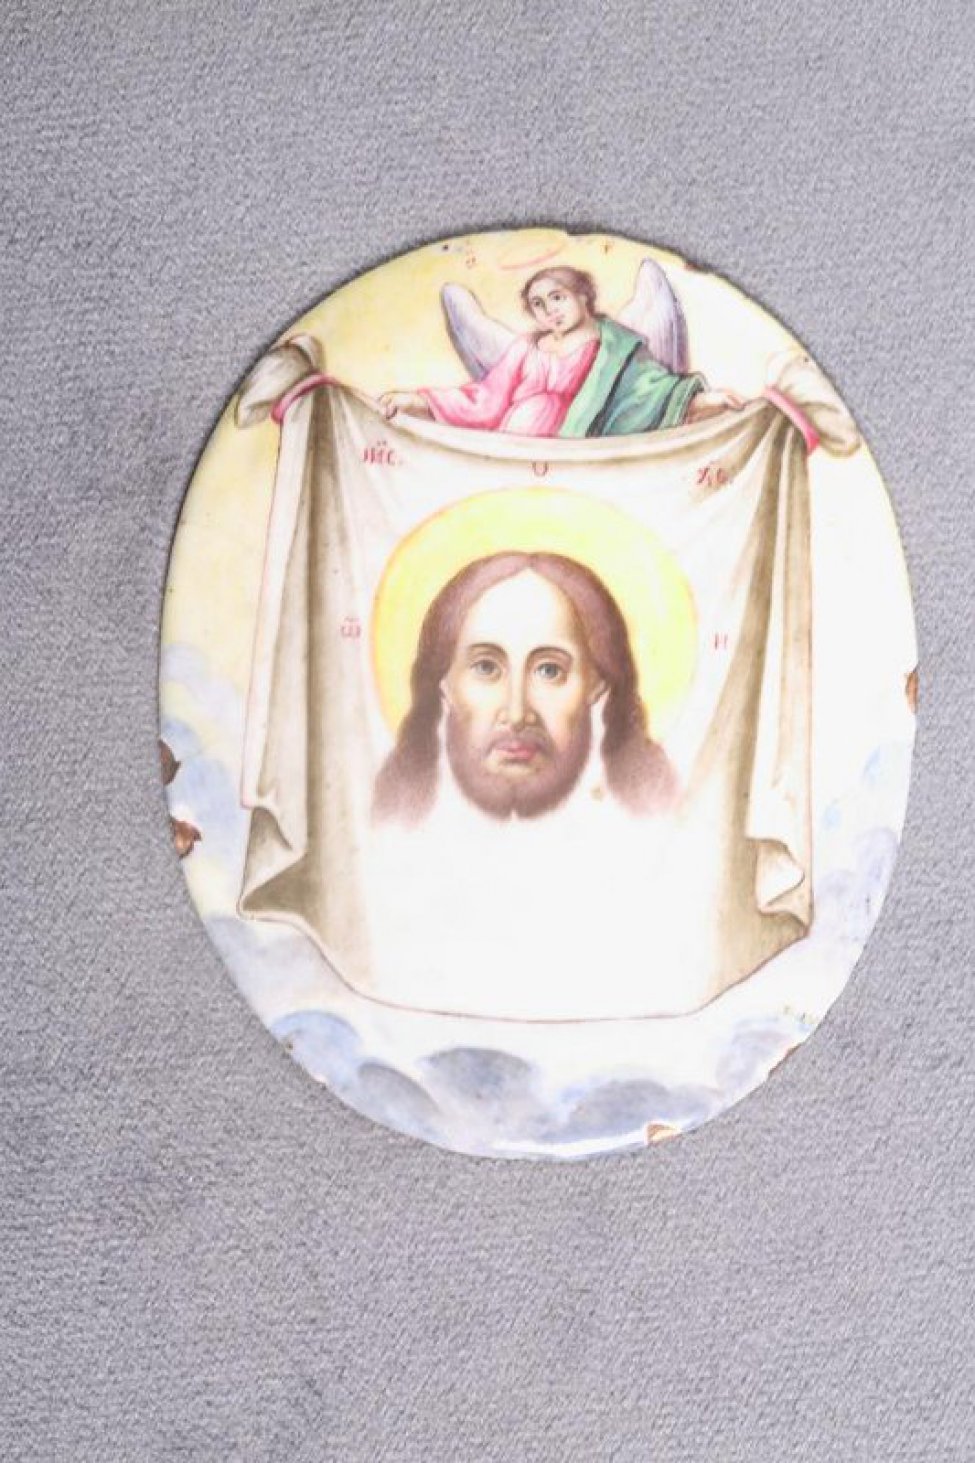 На дробнице - ангел над облаками, поддерживающий убрус, на котором изображен лик Христа. Цвета эмали: серо-голубой, желтый, малиновый, зеленый, коричневый,белый